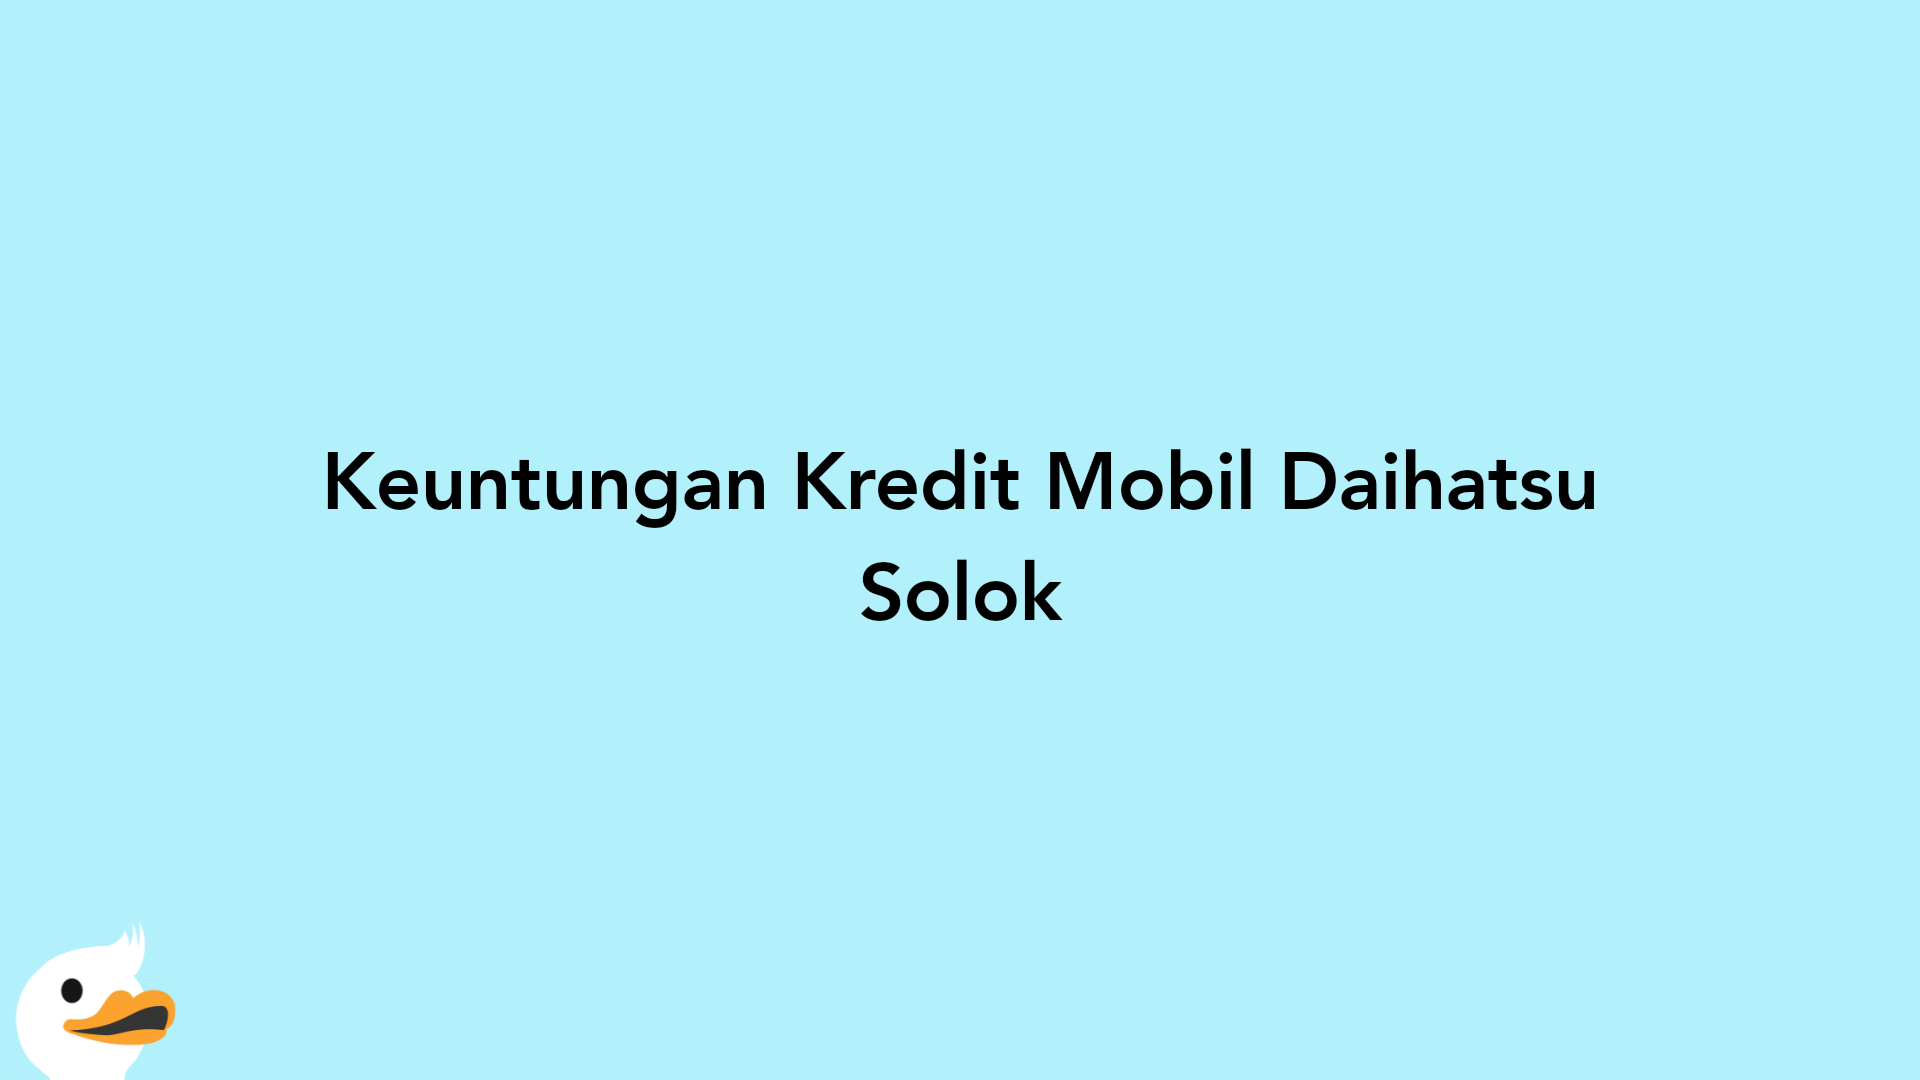 Keuntungan Kredit Mobil Daihatsu Solok